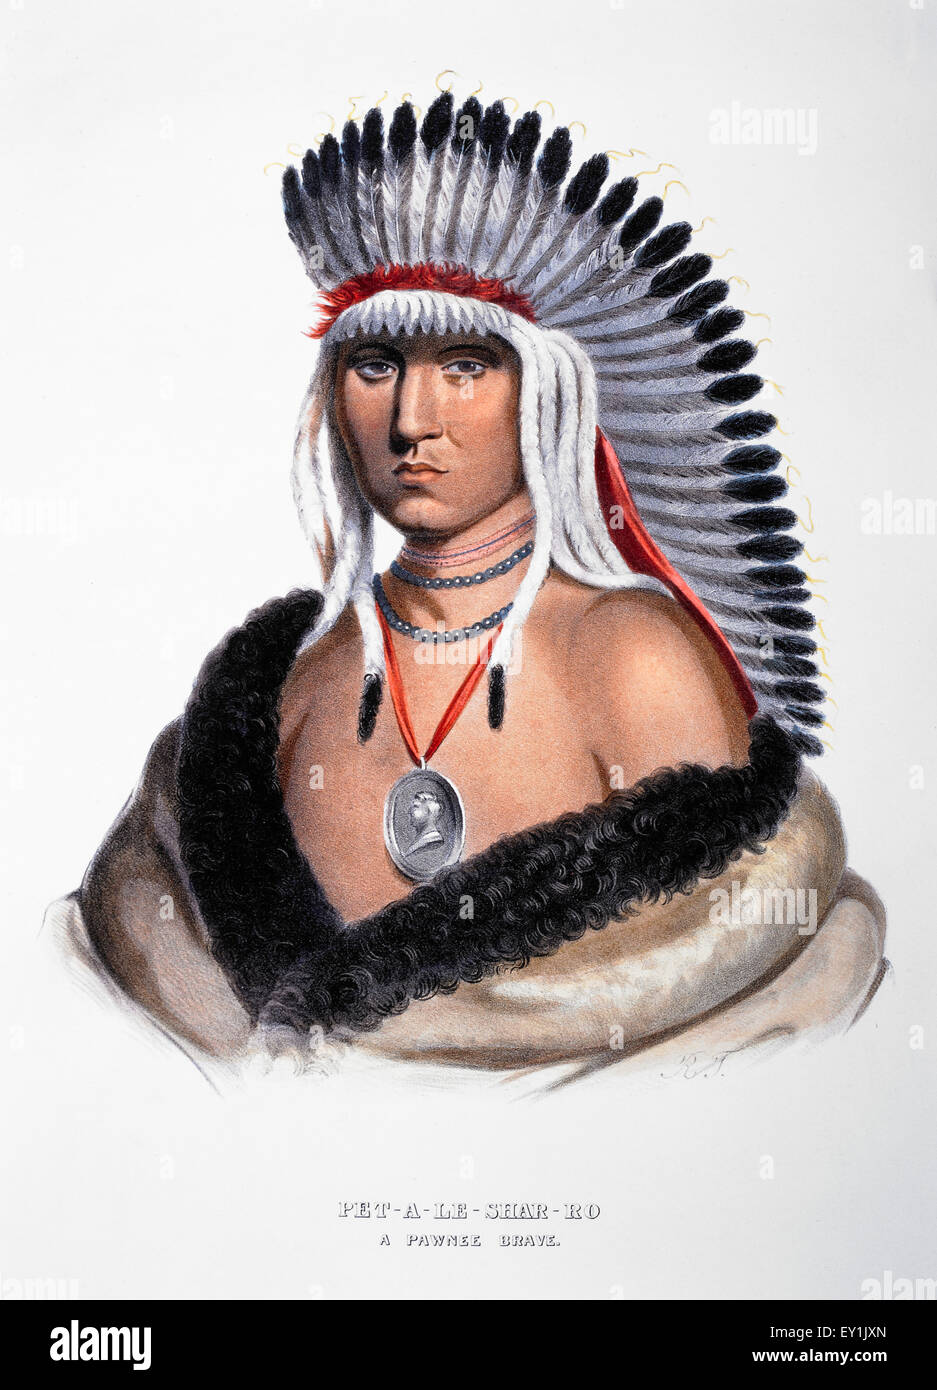 PET-A-Le-Shar-Ro, Pawnee Chief, Portrait, McKenney & Hall Lithographie von einem 1821 Gemälde von Charles Bird King Stockfoto